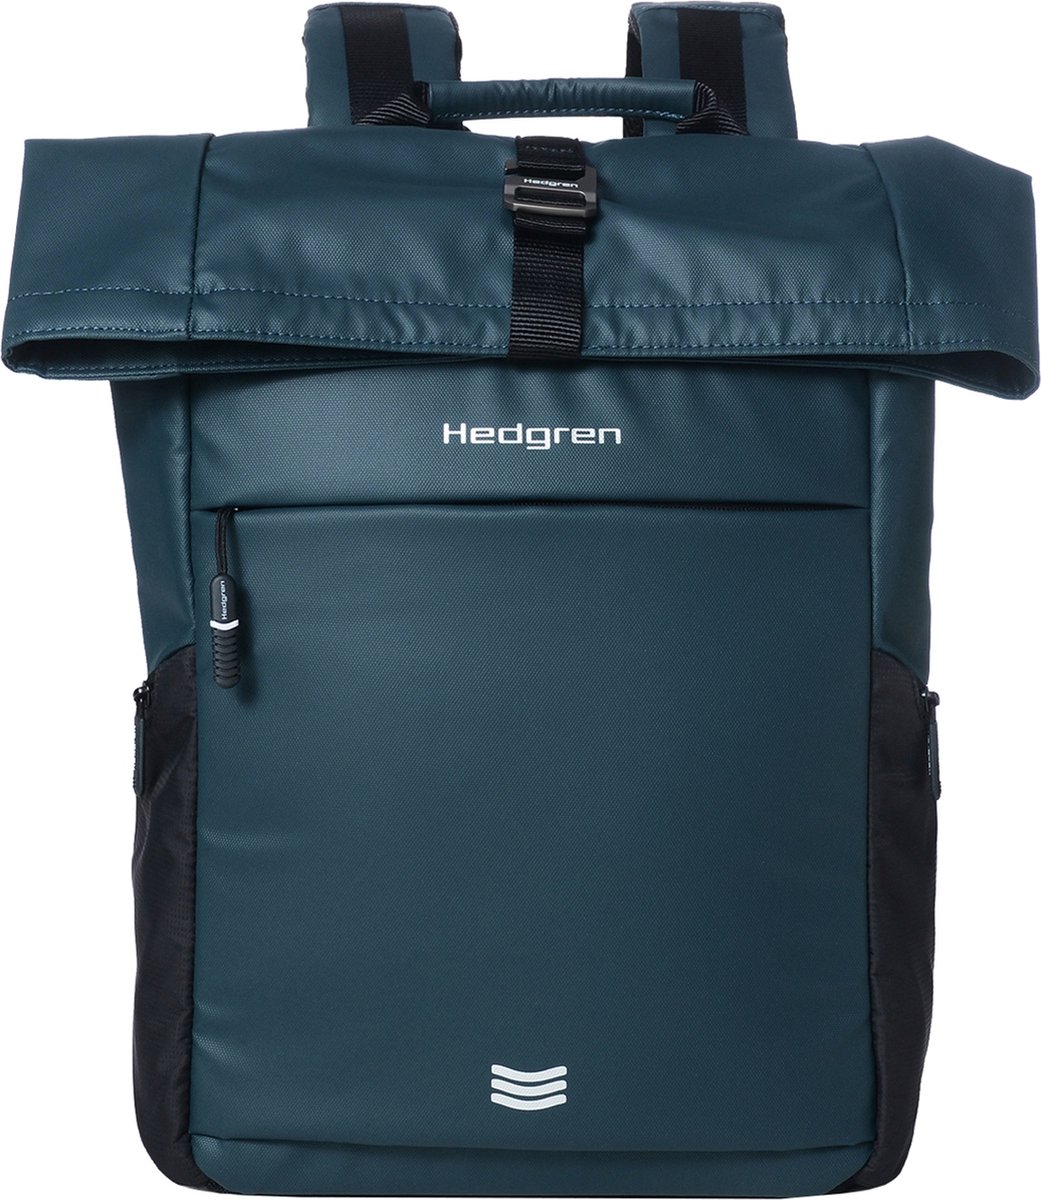 Hedgren Laptop Rugzak / Rugtas / Laptoptas / Werktas - Commute - Blauw - 15 inch